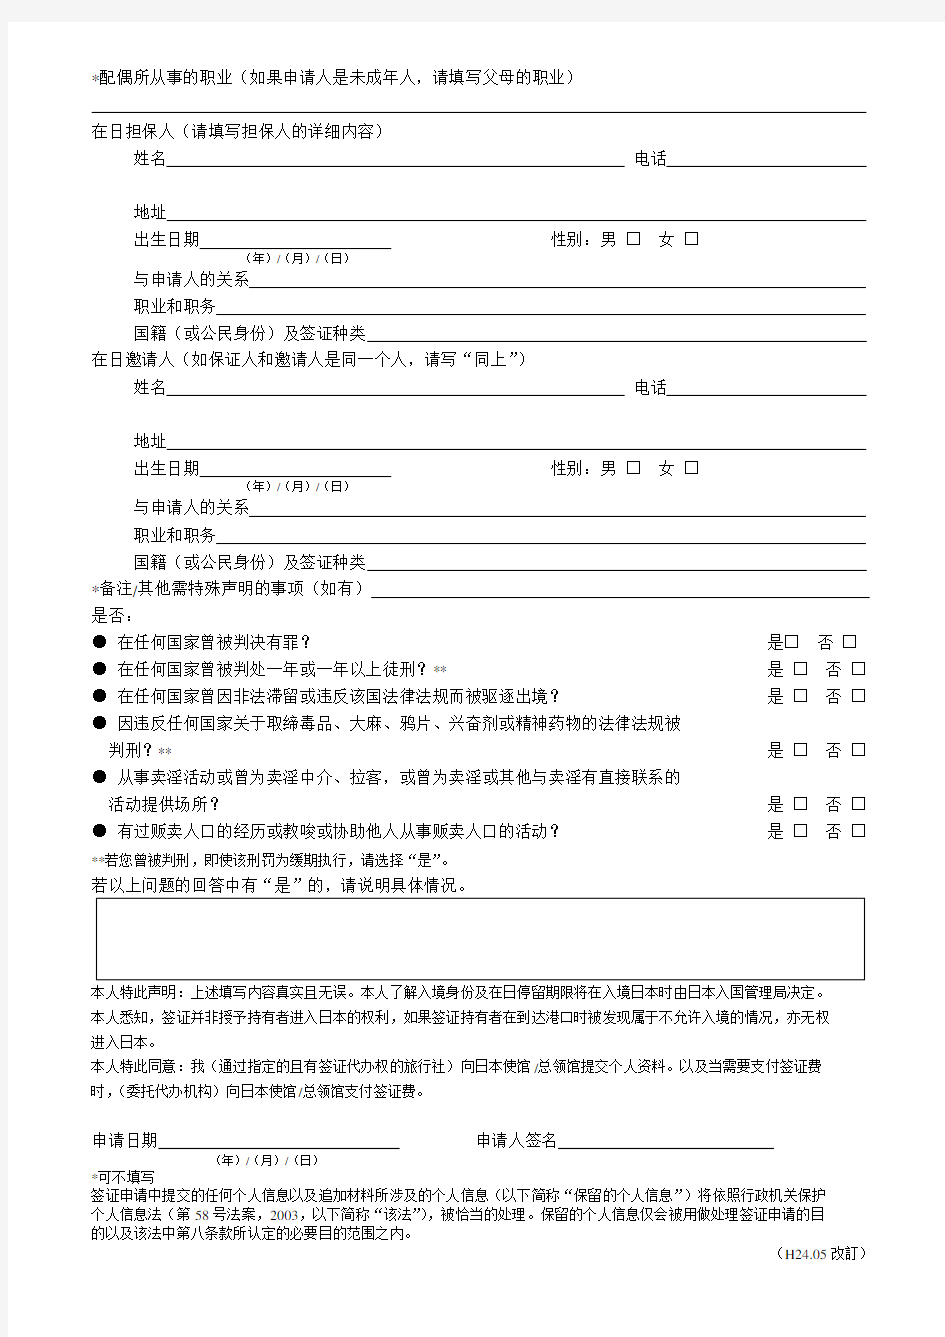 日本签证申请表(新)-打印即可